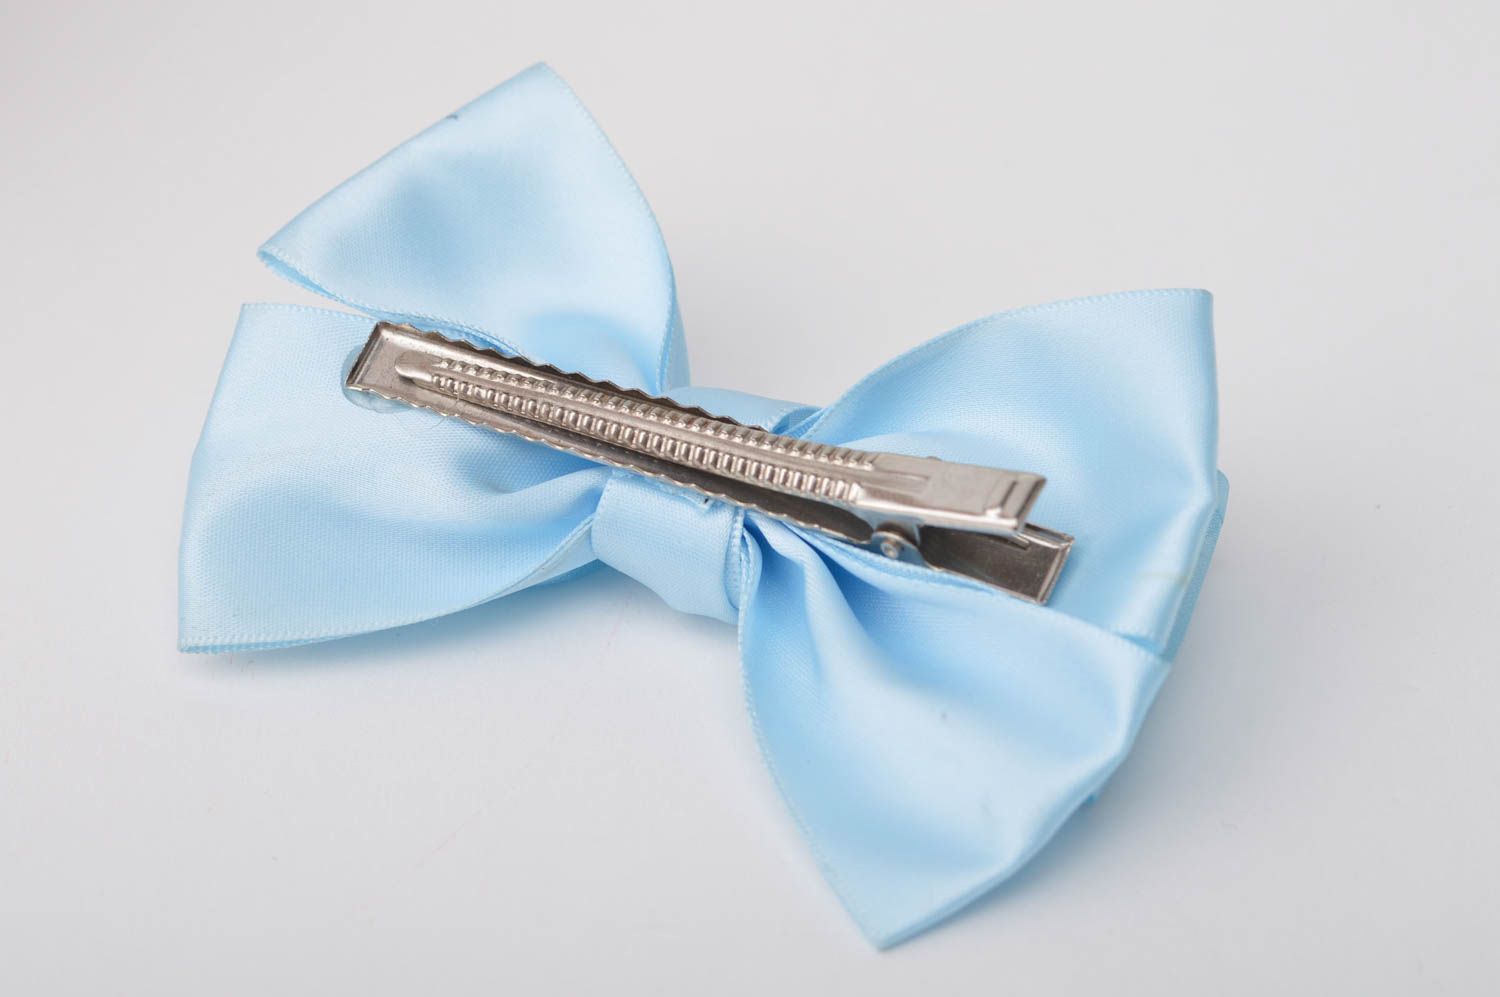 Handmade Frisur Haarspange Schleifen Haarspange Mode Accessoire blau zart schön foto 10